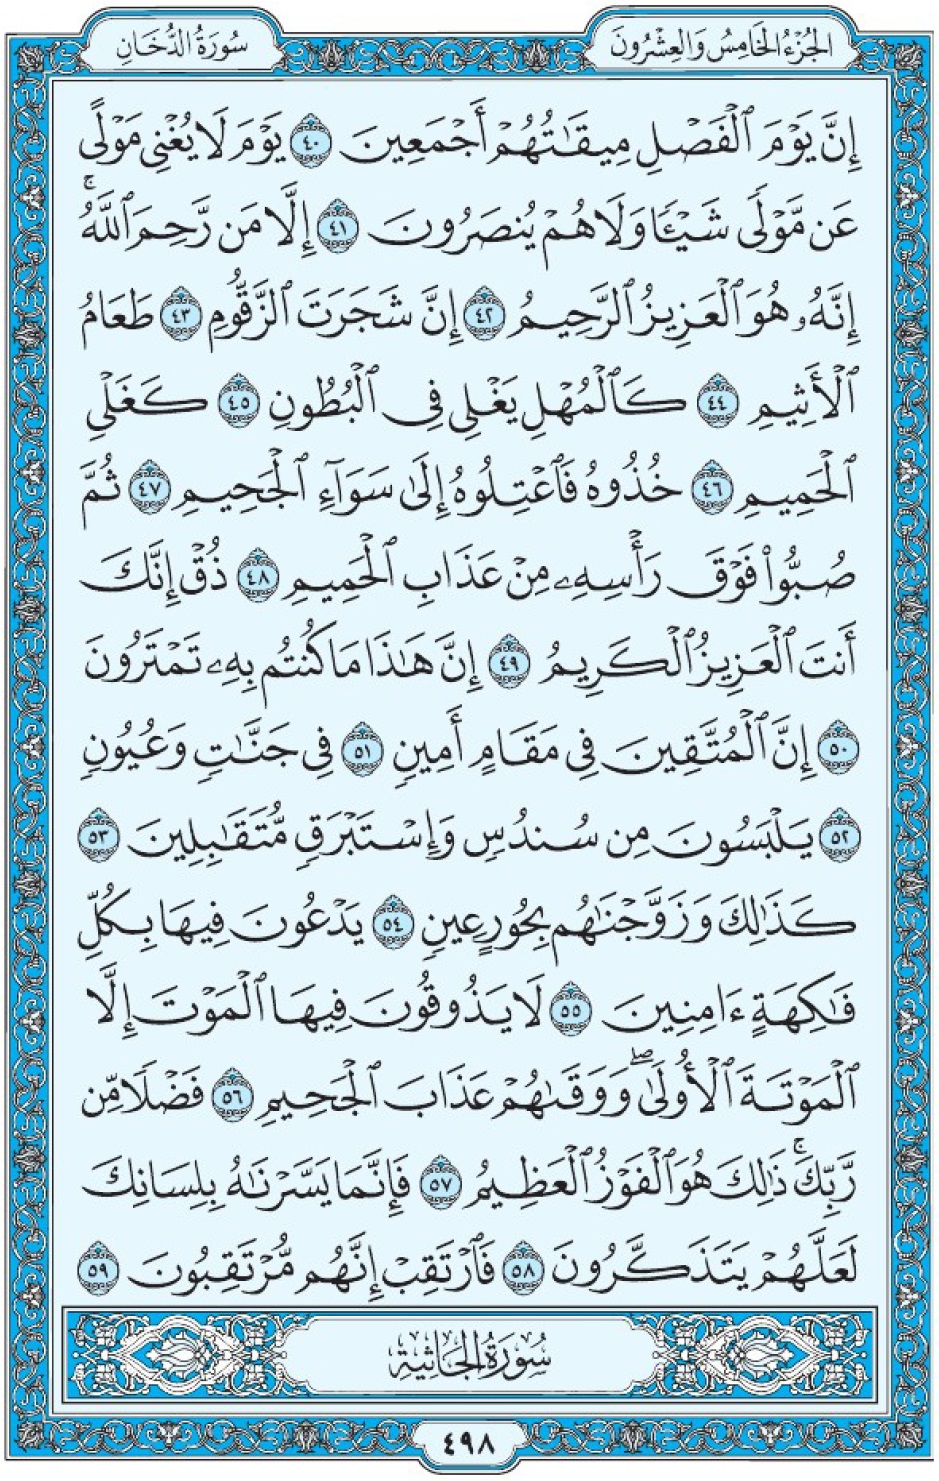 Коран Мединский мусхаф страница 498, Ад-Духан, аят 40-59